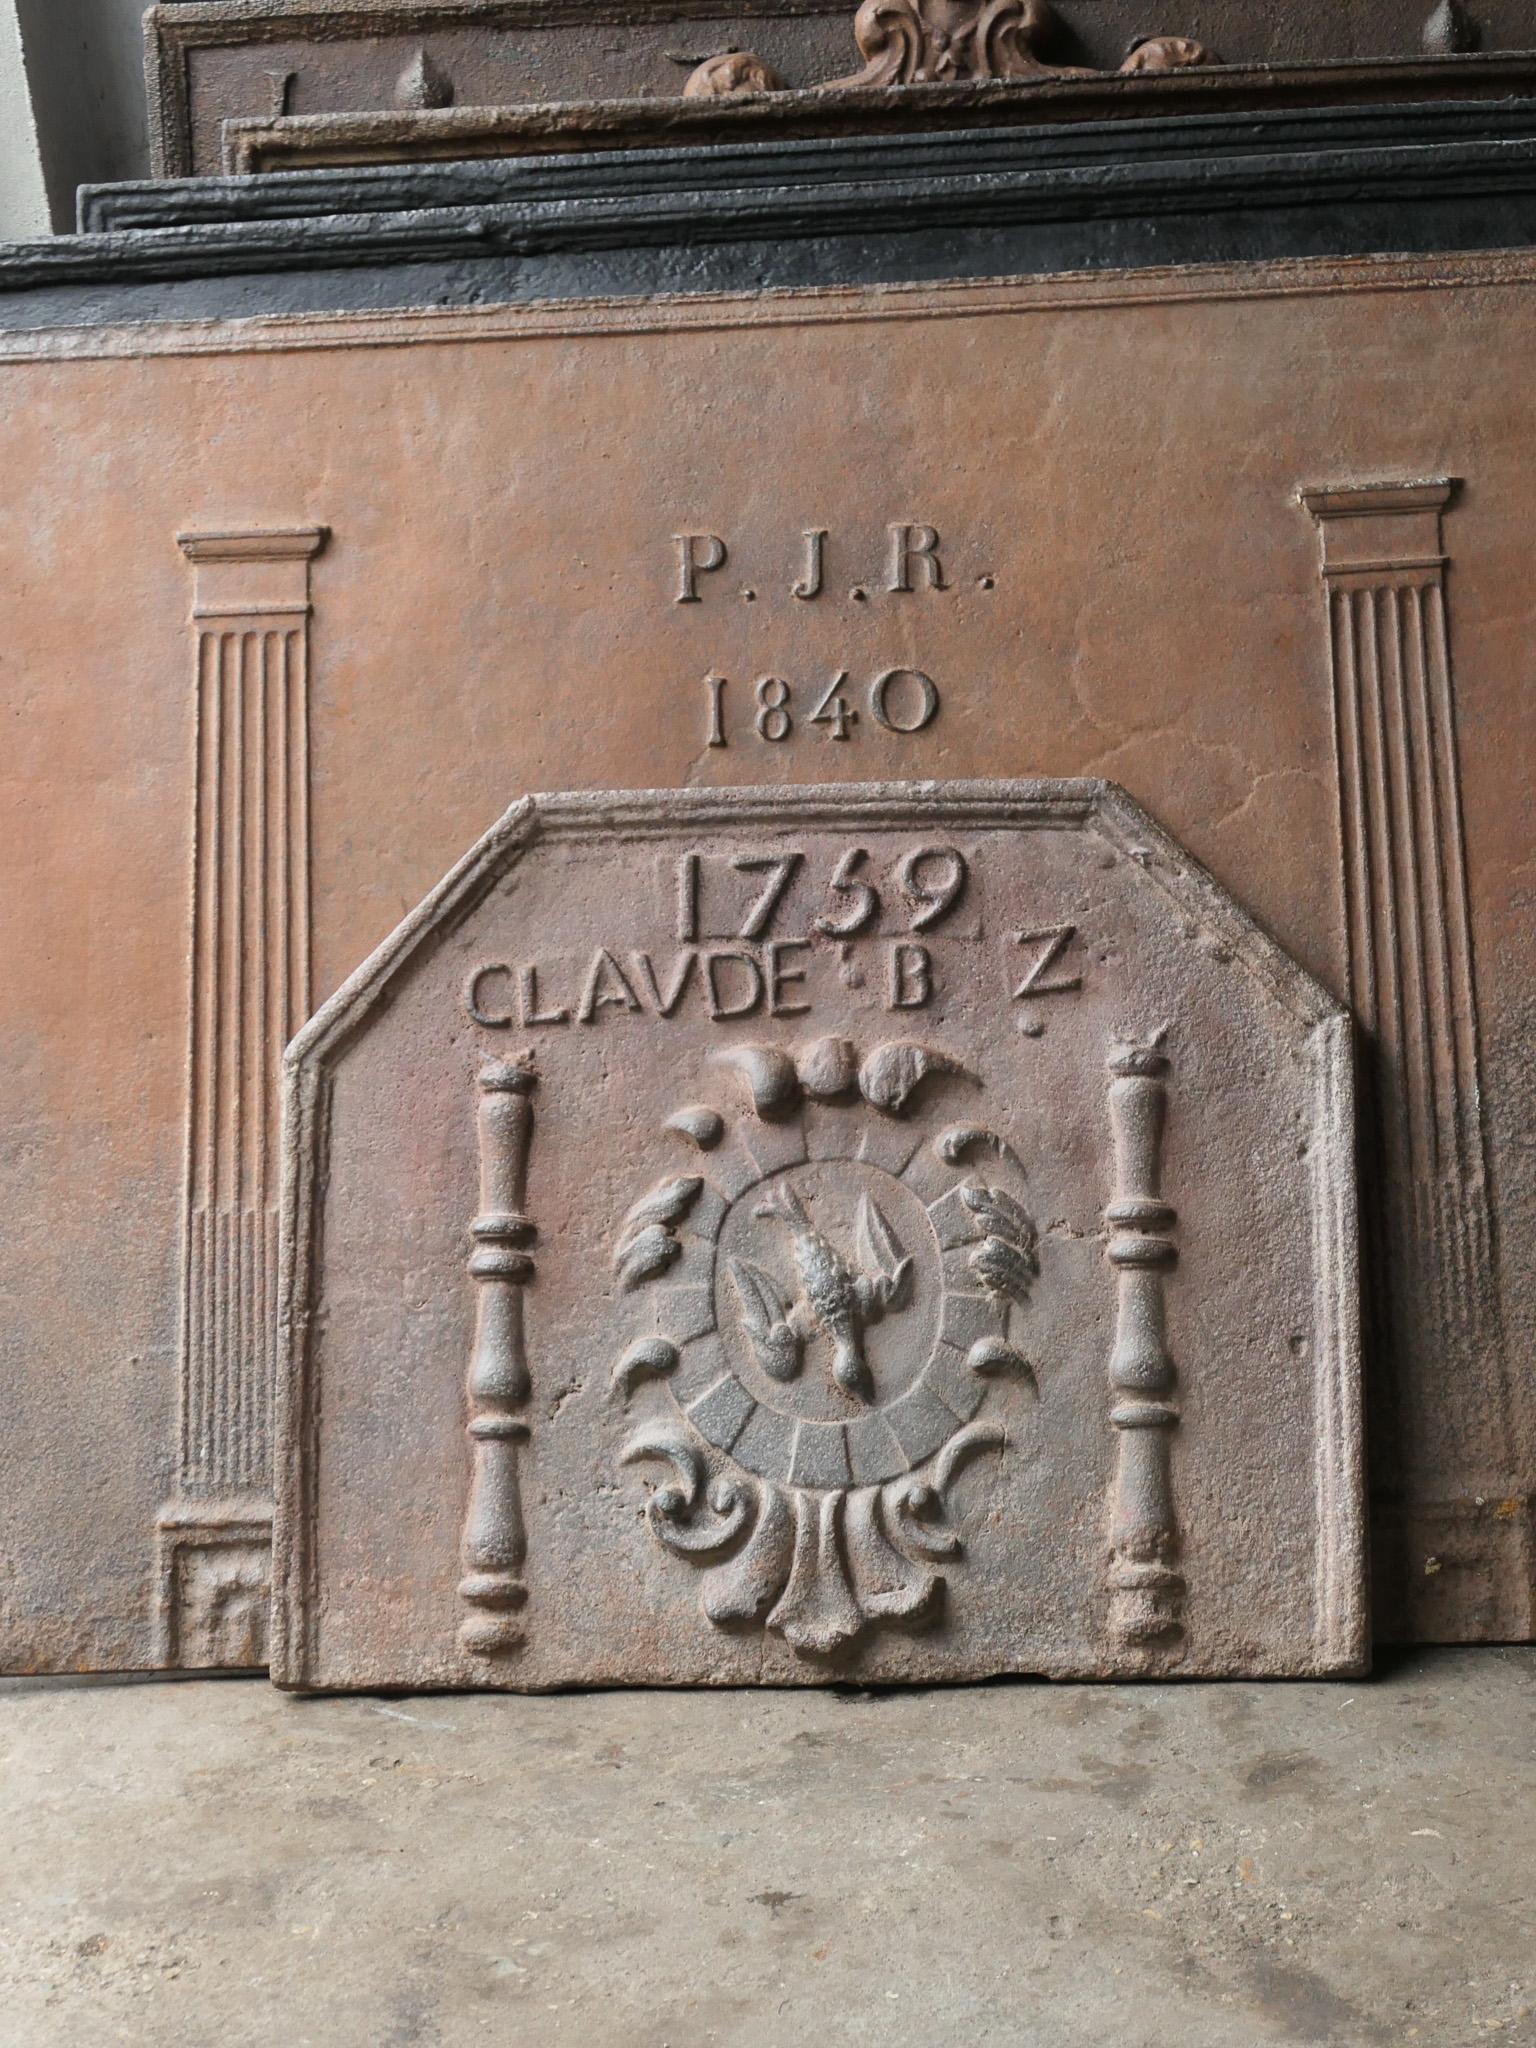 Französischer Louis XIV-Feuerboden mit Wappen und zwei Säulen. Die Säule bezieht sich auf die Keule des Herkules, seine Lieblingswaffe. Es symbolisiert Macht. Der Name des Eigentümers und das Herstellungsjahr sind ebenfalls in den Feuerboden